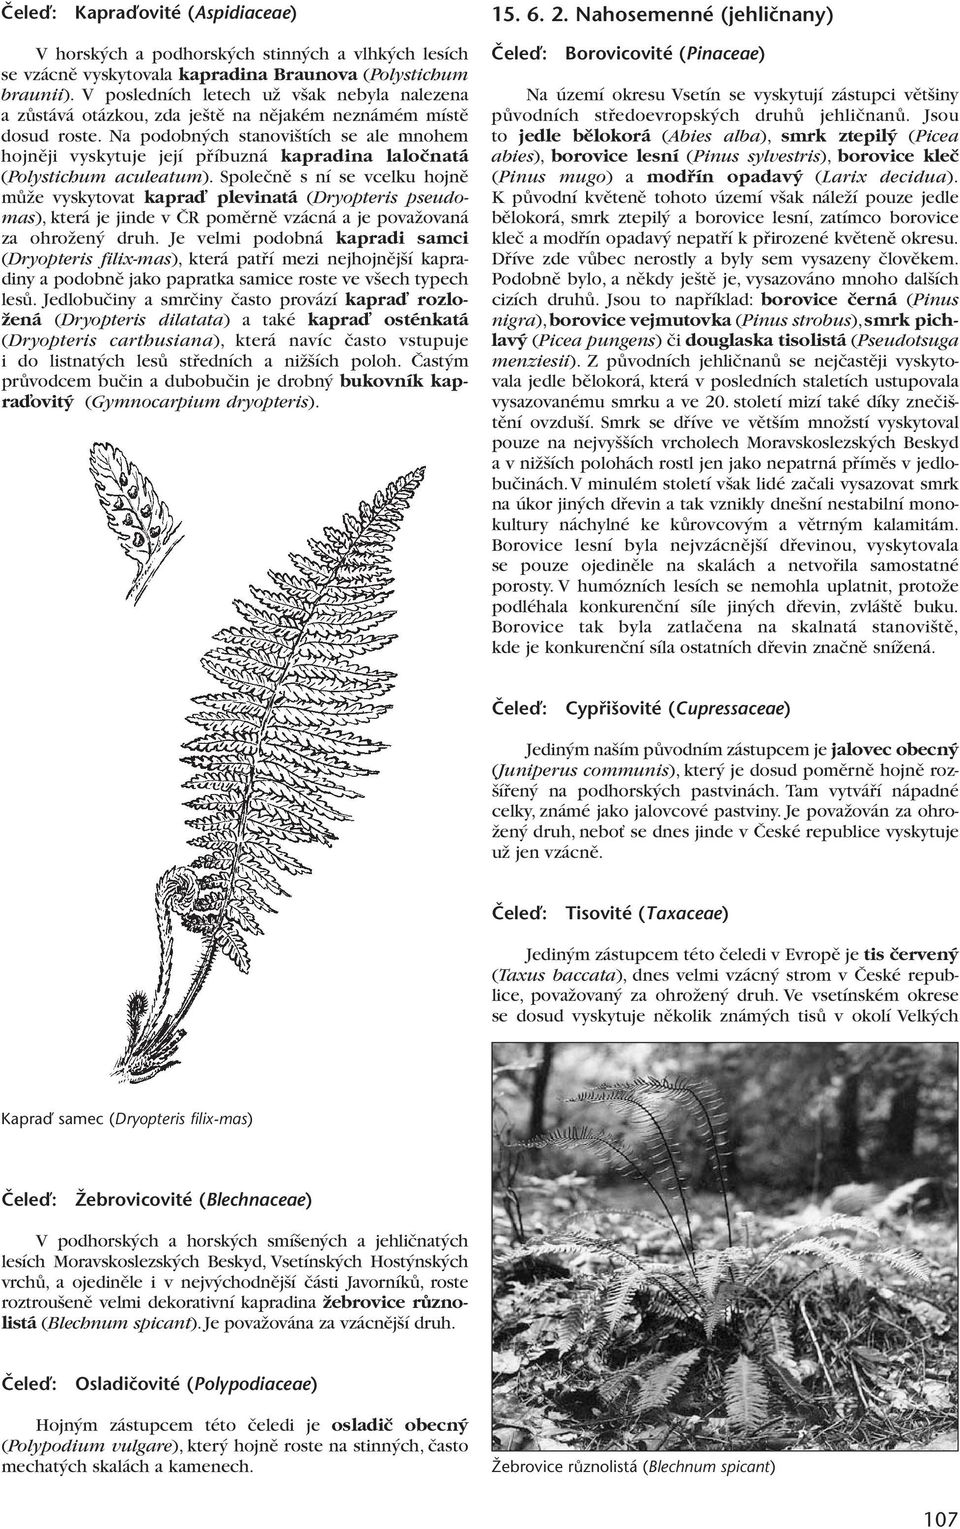 Na podobn ch stanovi tích se ale mnohem hojnûji vyskytuje její pfiíbuzná kapradina laloãnatá (Polystichum aculeatum).